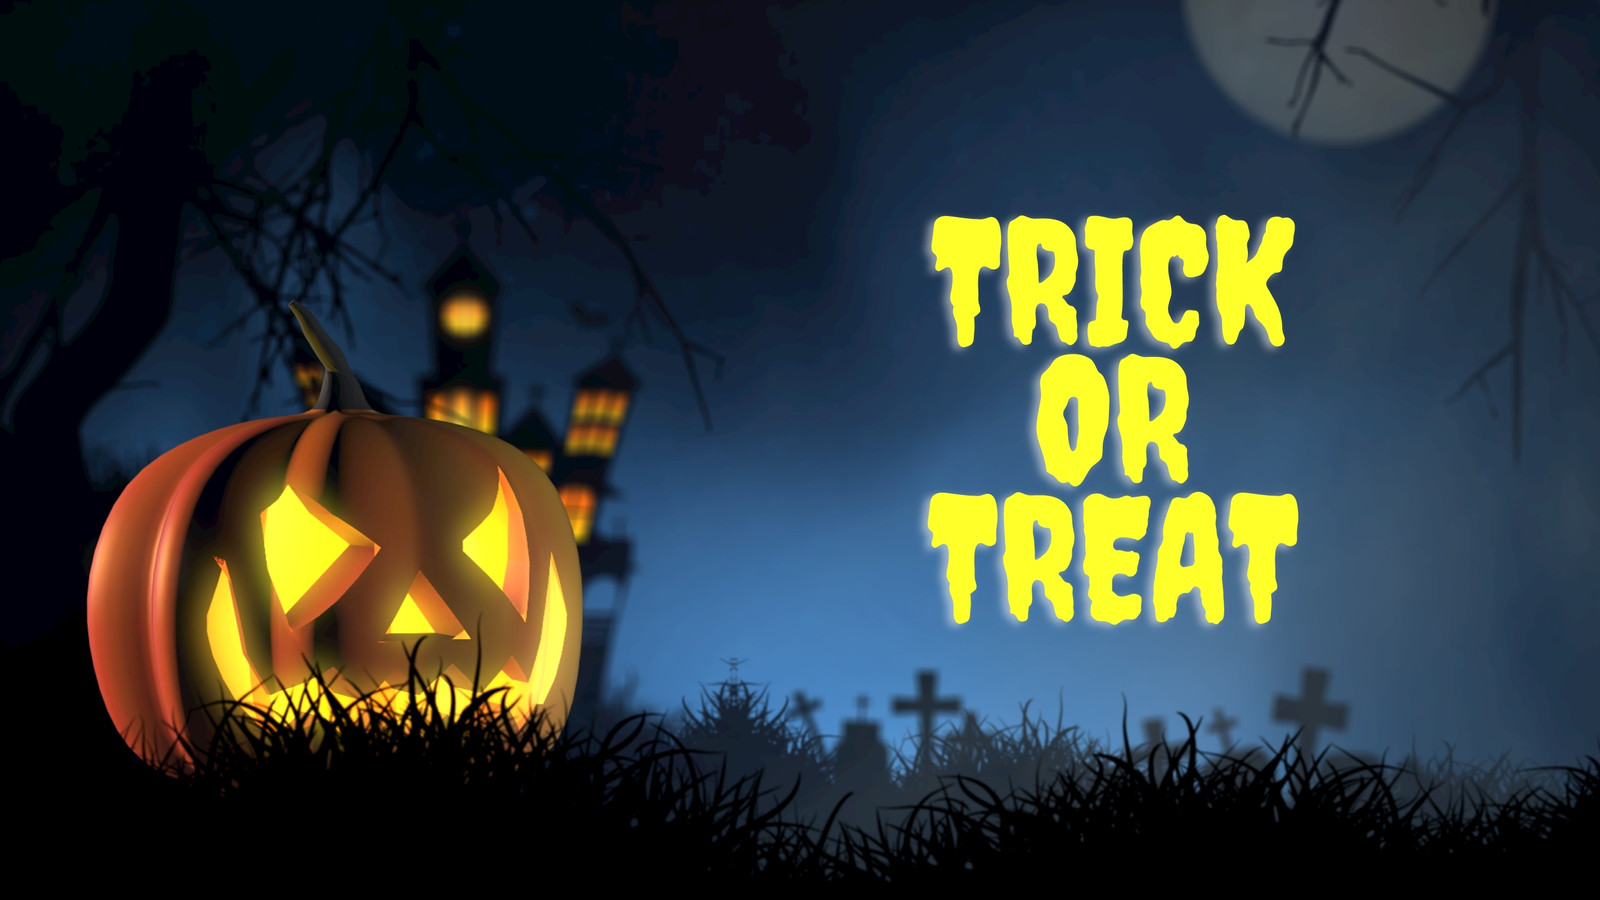 Spooky Halloween Desktop Wallpapers